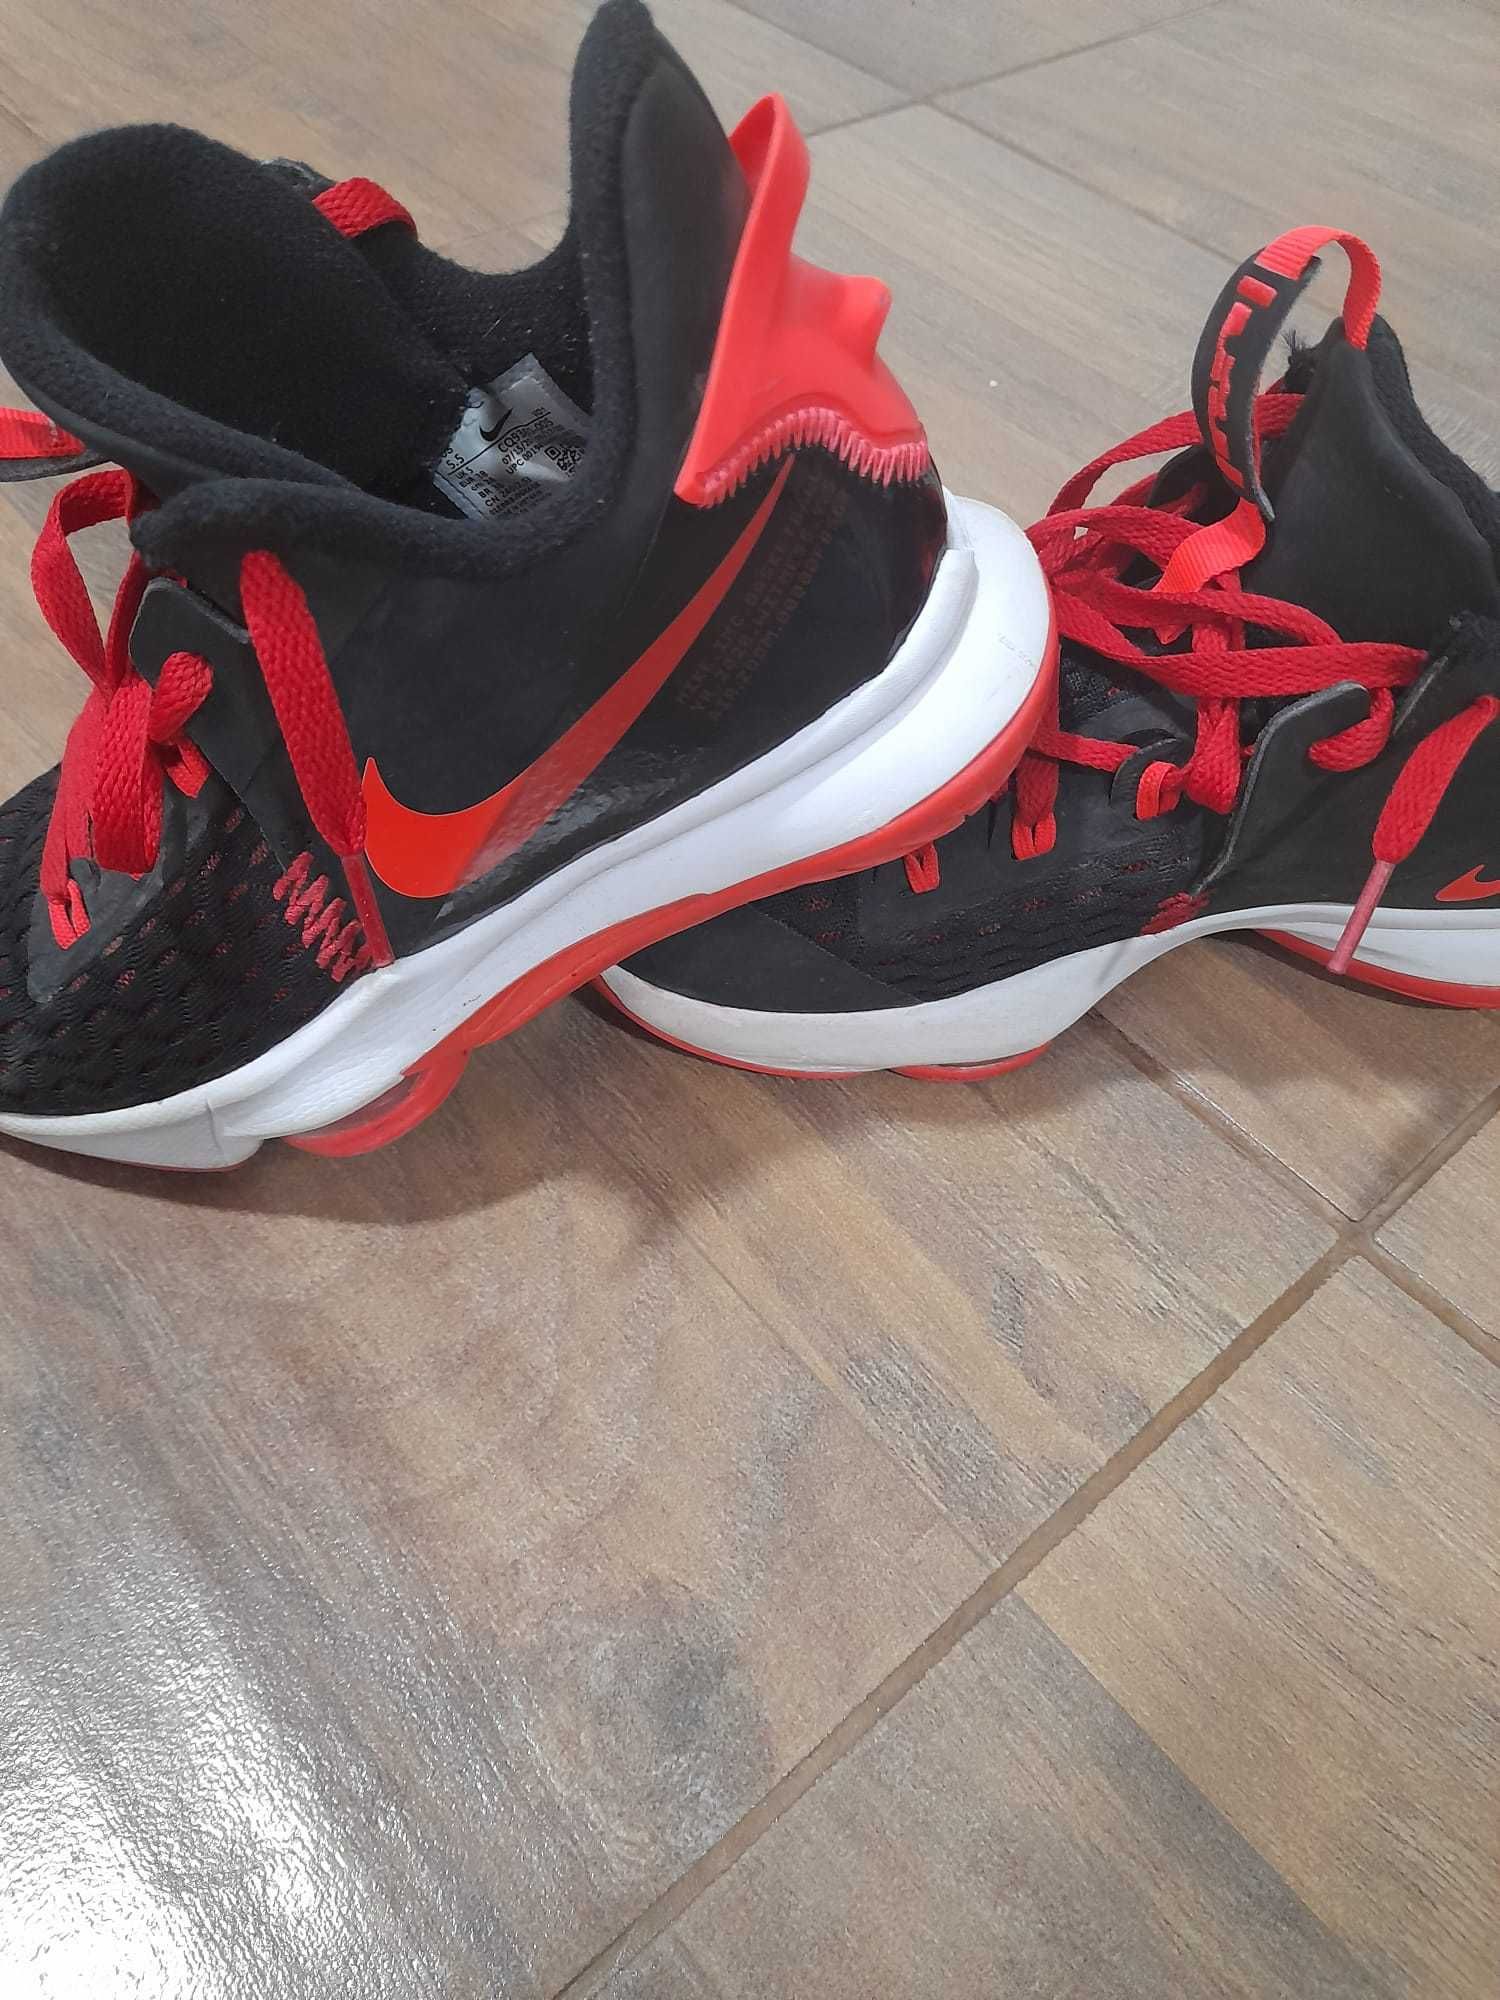 Adidas Nike Lebron